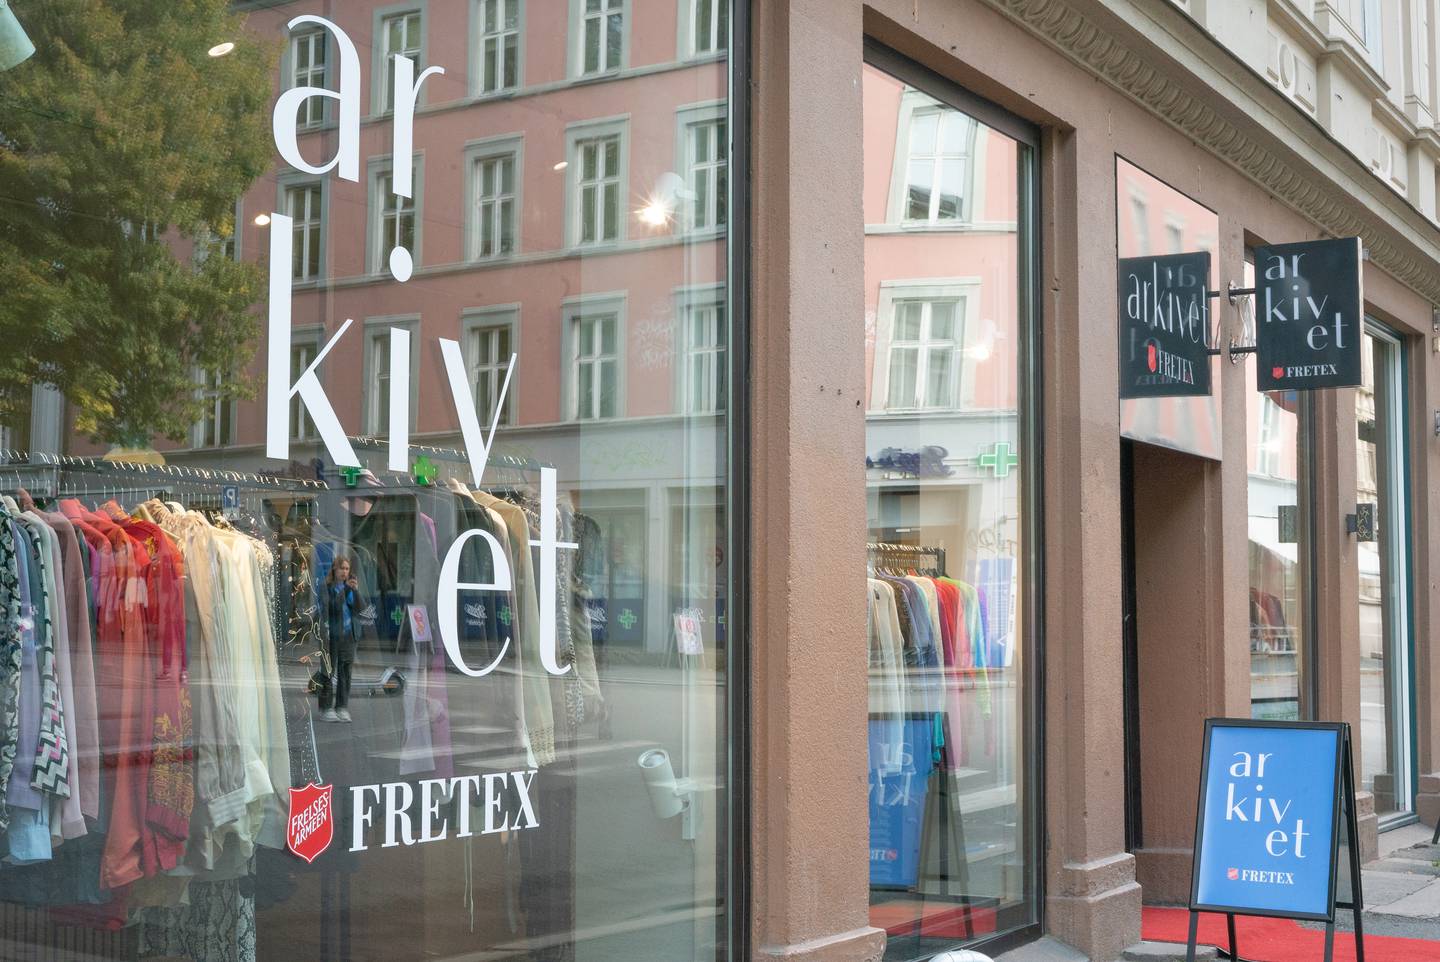 Bilder av Fretex Arkivet (Grunnerløkka, Oslo) i forbindelse til en sak om Fretex satsting på "luksus" klær.